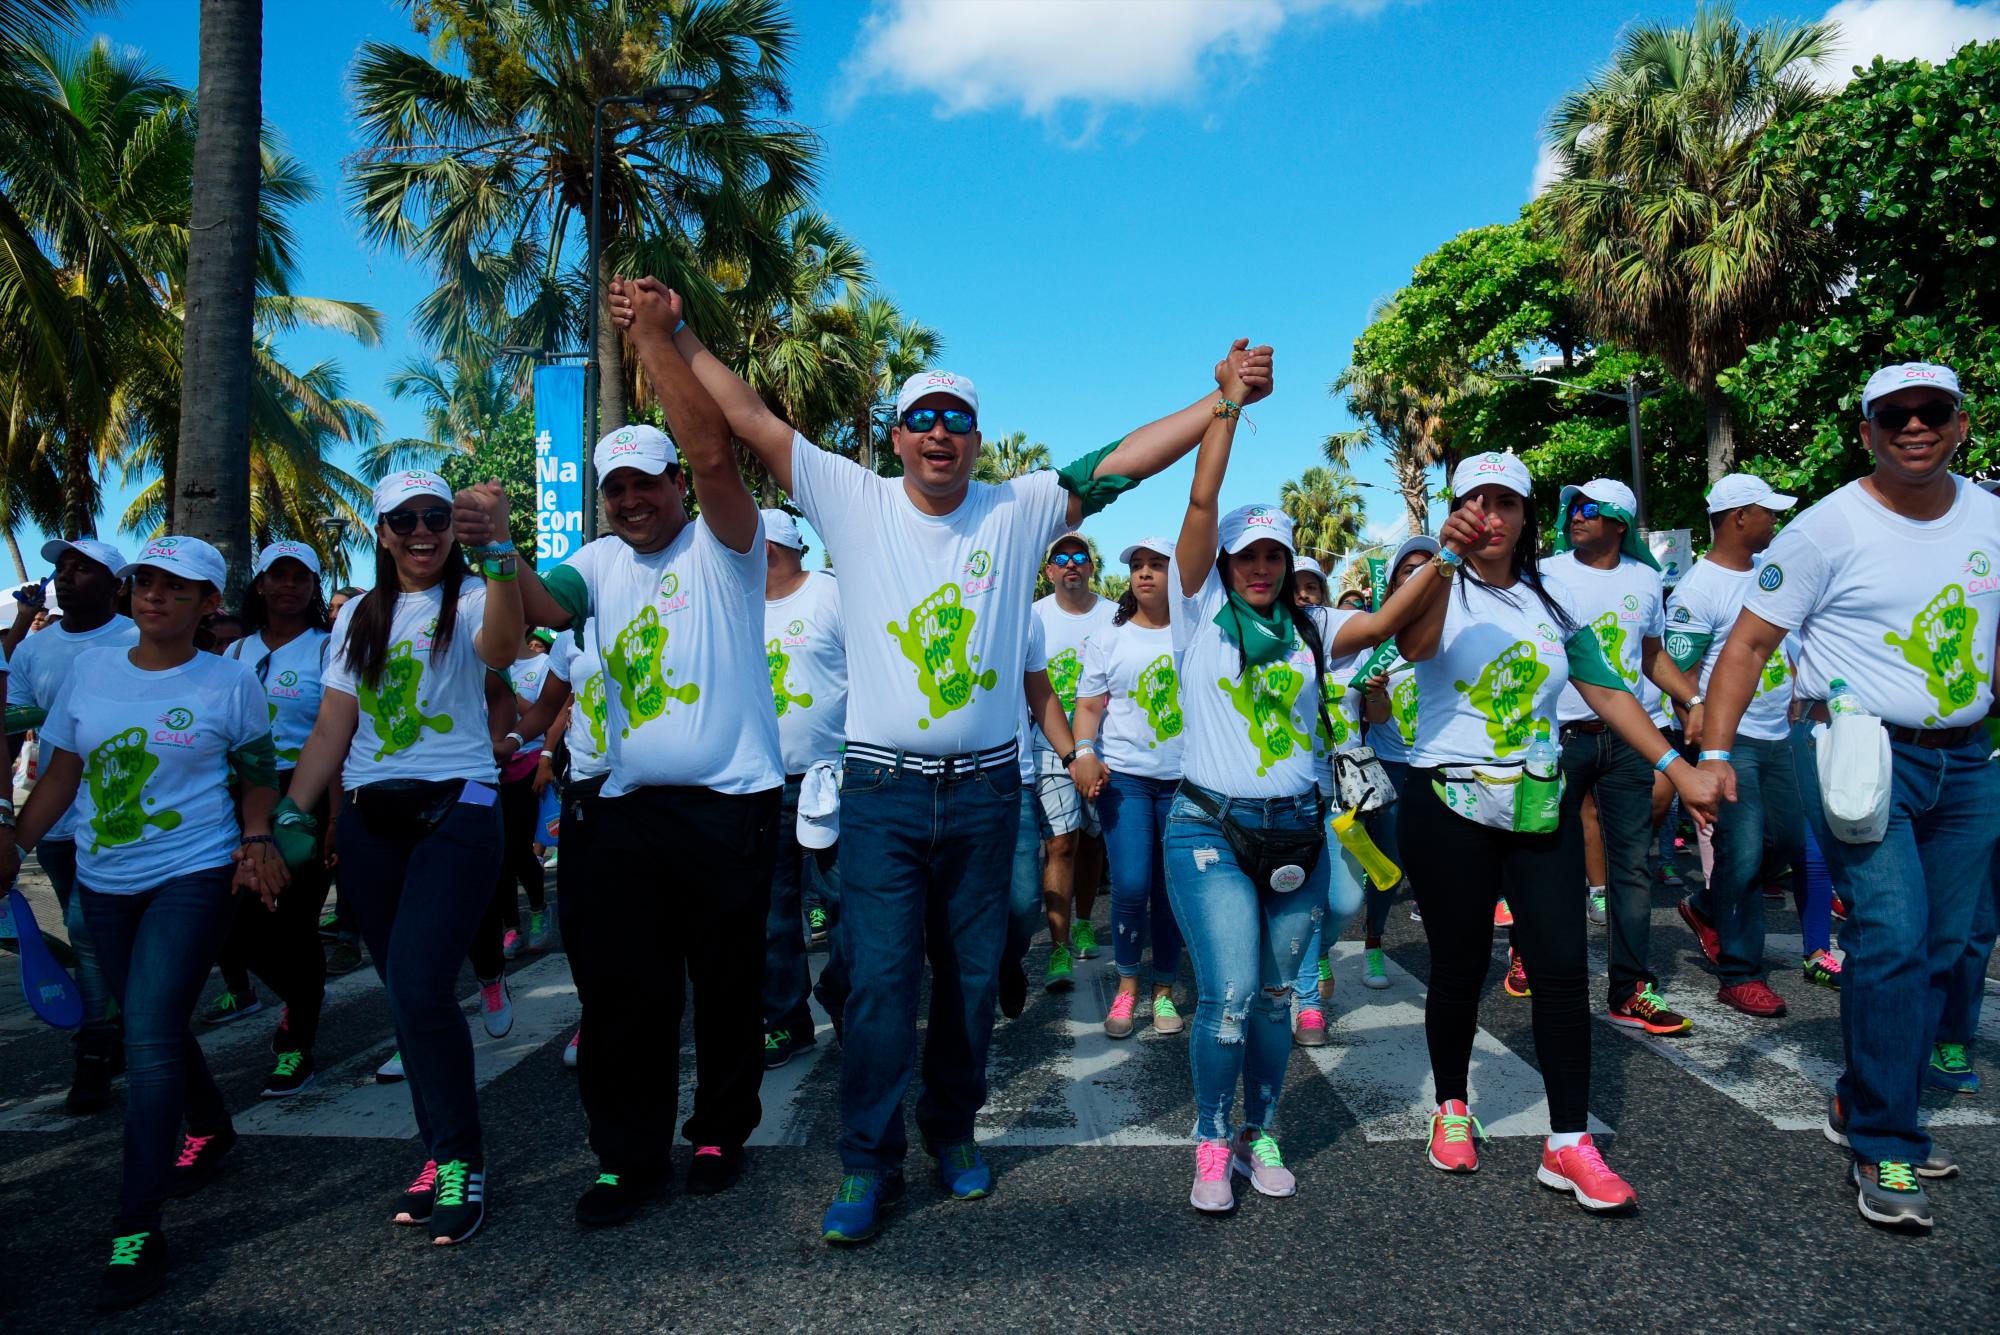 Según los organizadores de Caminantes por la Vida 2019, unas 25 mil personas donaron sus pasos este año en favor de la lucha contra el cáncer.